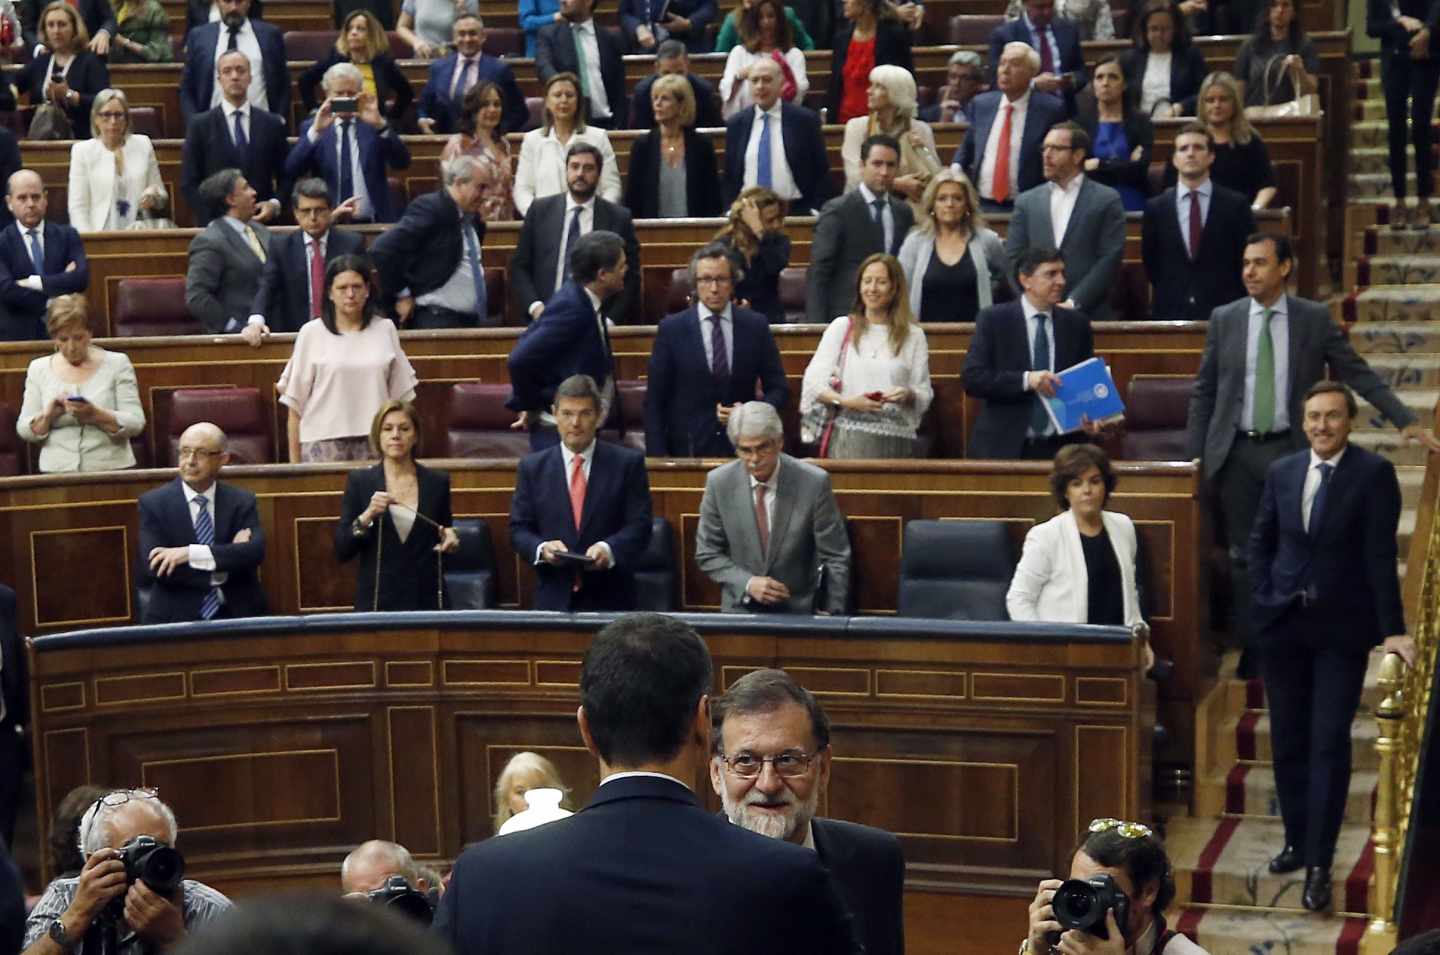 El secretario general del PSOE Pedro Sánchez, saluda al presidente del gobierno Mariano rajoy, en el hemiciclo del Congreso tras el debate de la moción de censura presentada por su partido.